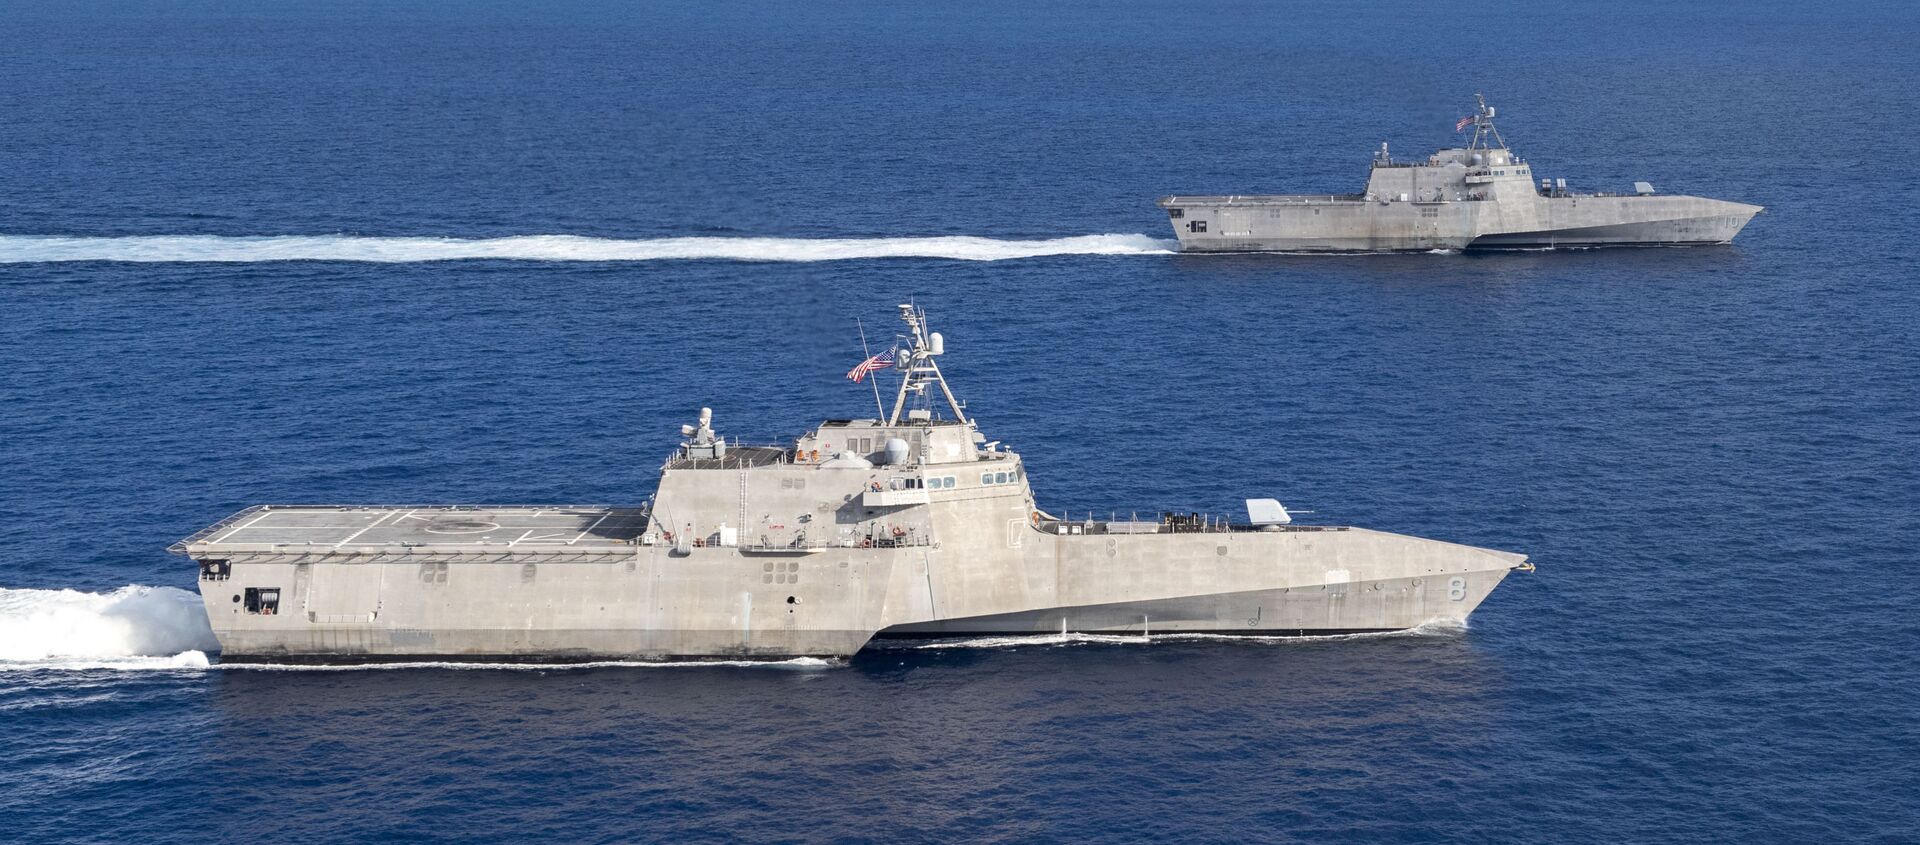 USS Montgomery (LCS 8) USS và Gabrielle Giffords (LCS 10) tàu chiến duyên hải ở Biển Đông vào ngày 28 tháng 1 năm 2020. - Sputnik Việt Nam, 1920, 06.07.2020